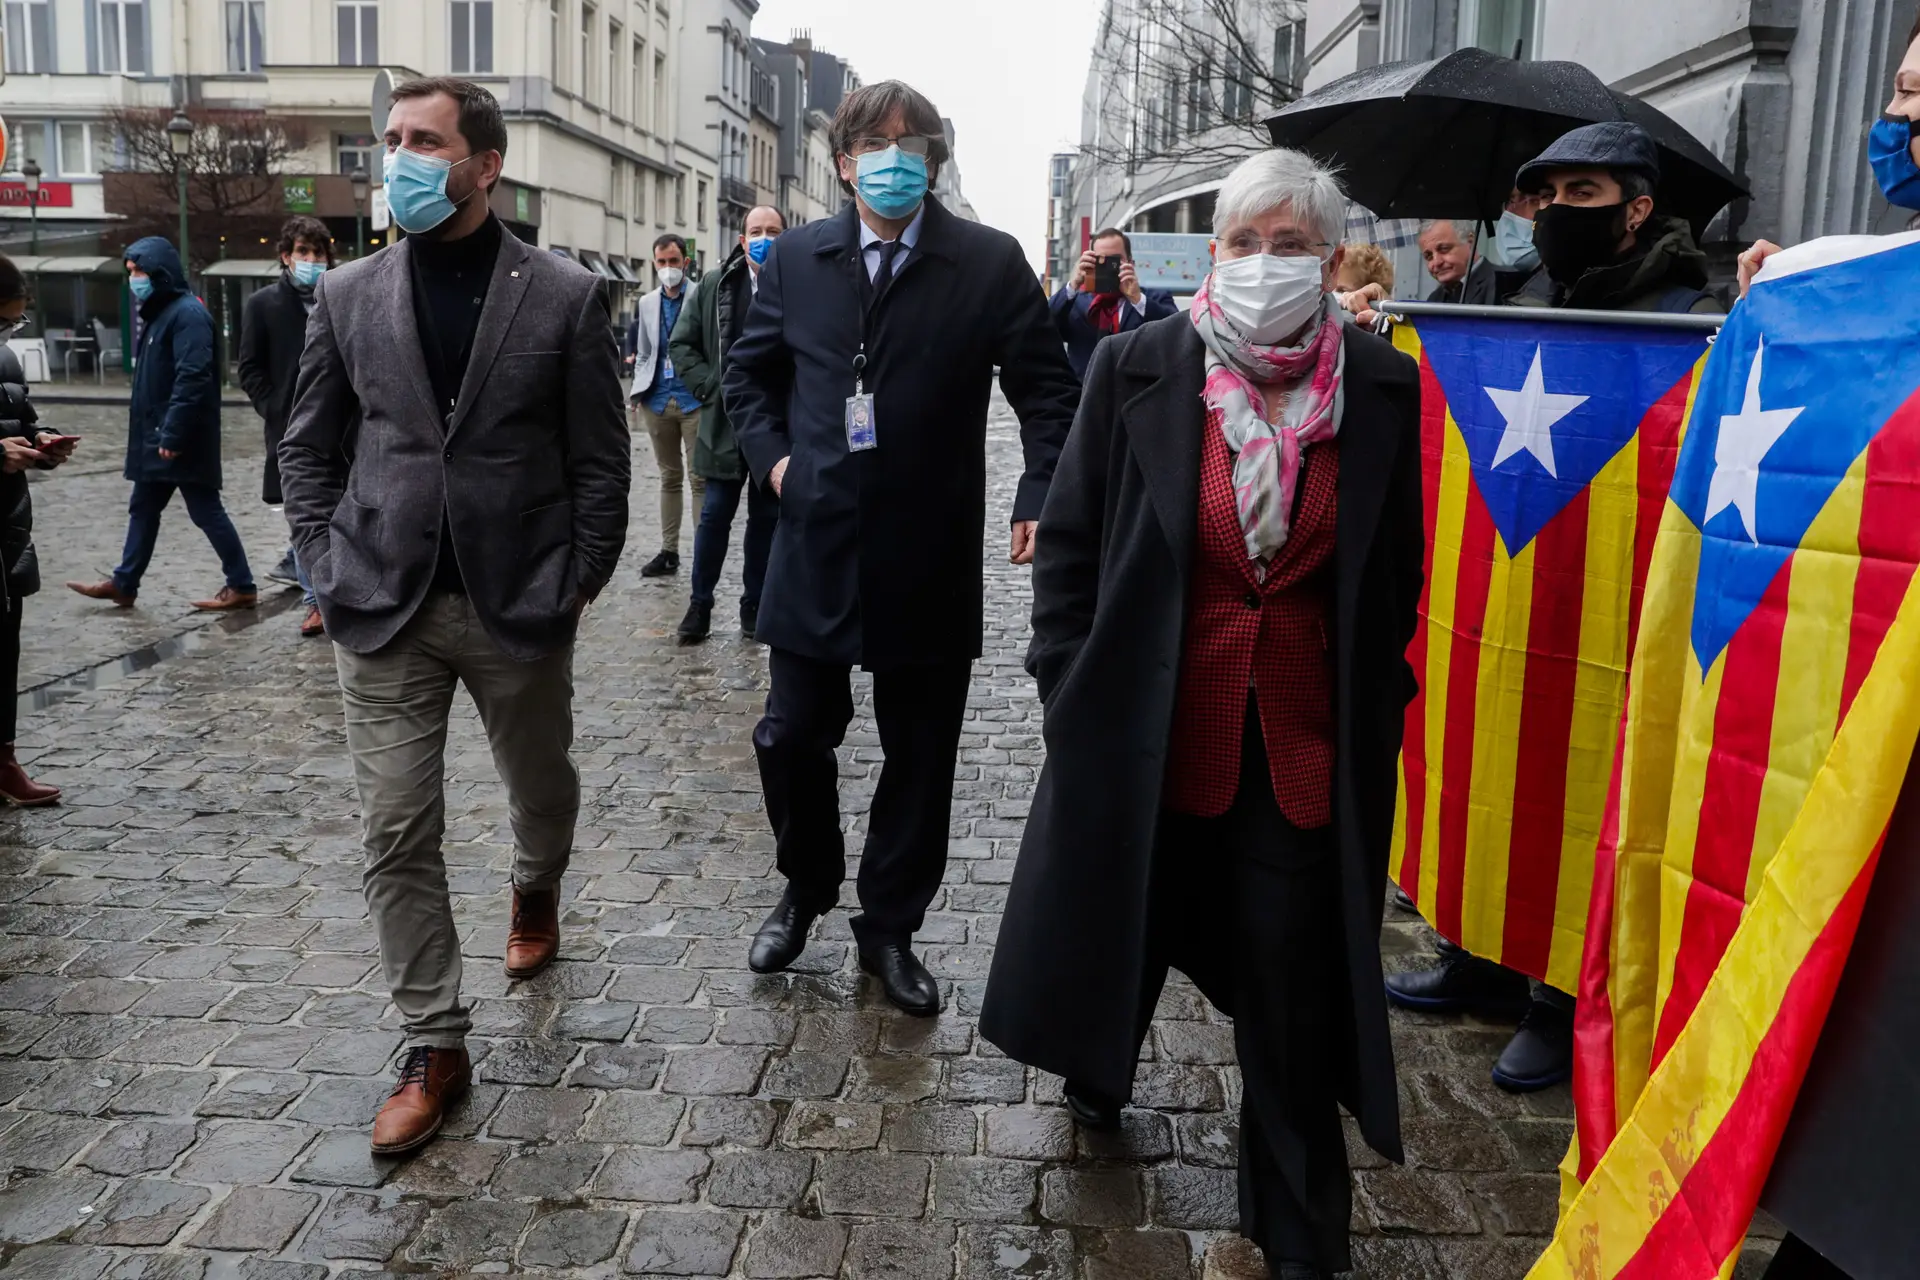 Toni Comín, Carles Puigdemont e Clara Ponsatí num protesto contra a decisão do Parlamento Europeu de lhes levantar a imunidade, a 9 de março de 2021 em Bruxelas